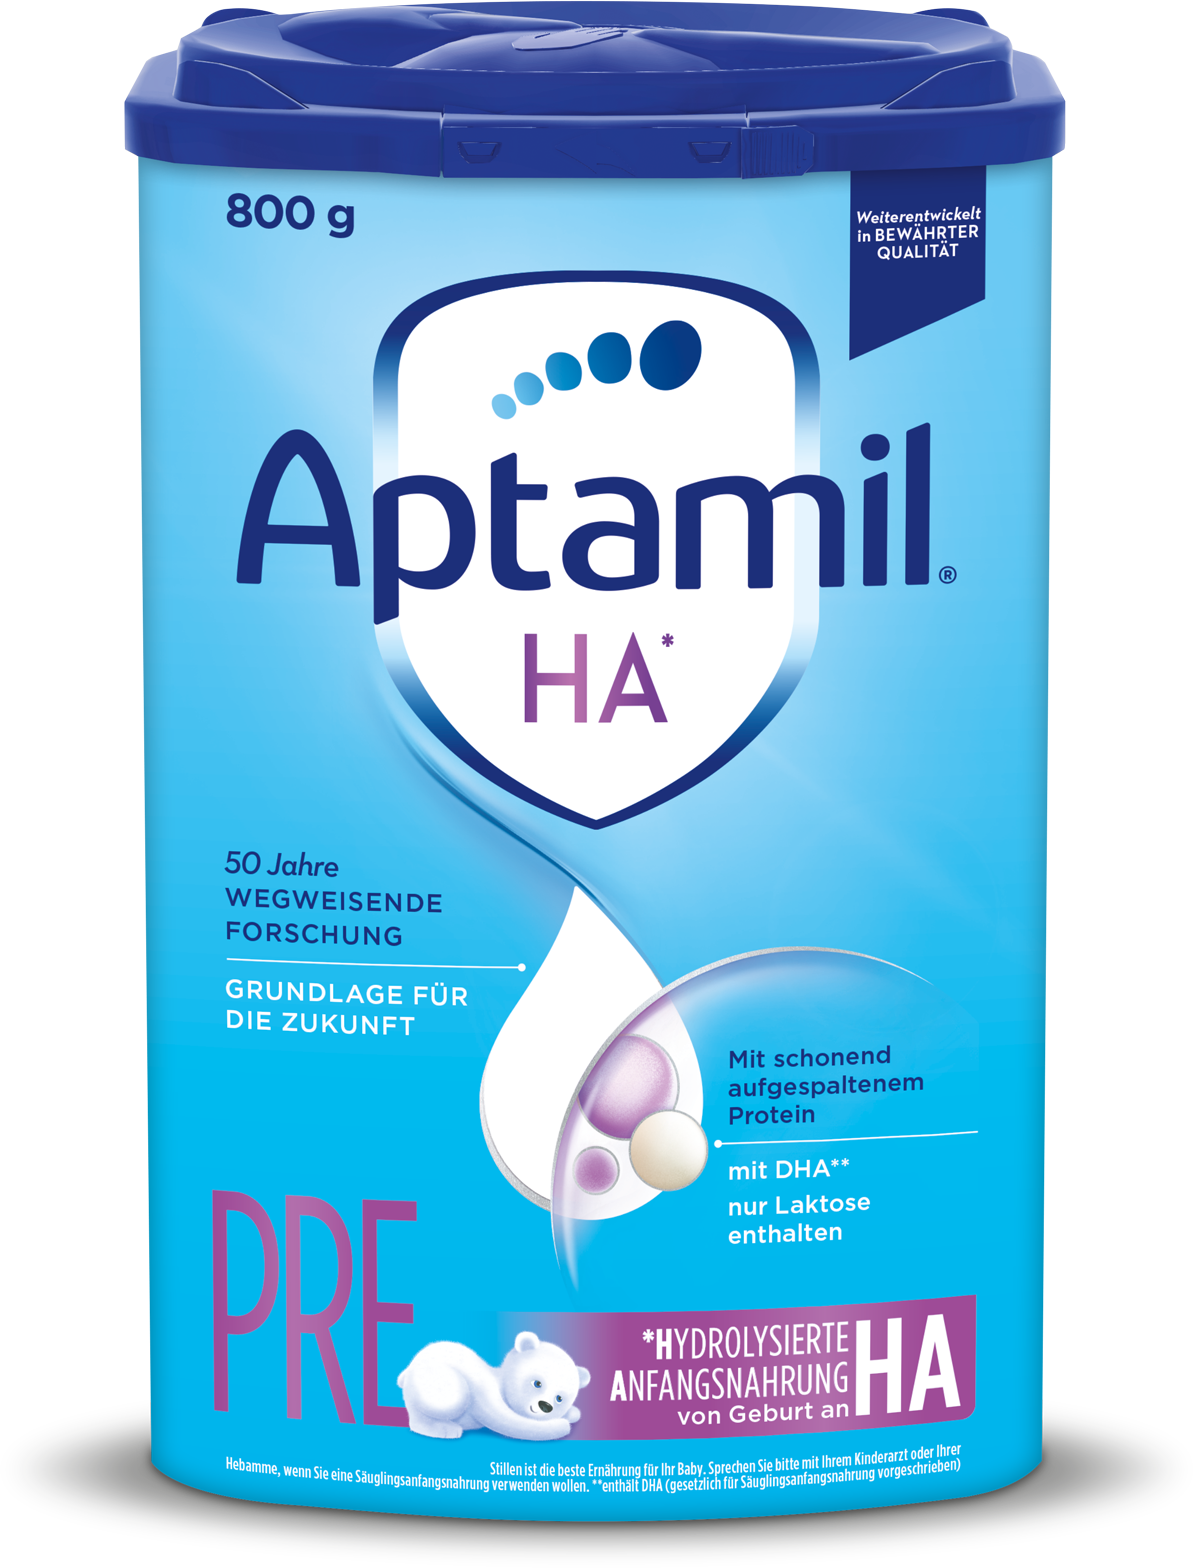 Aptamil HA Pre (800g)